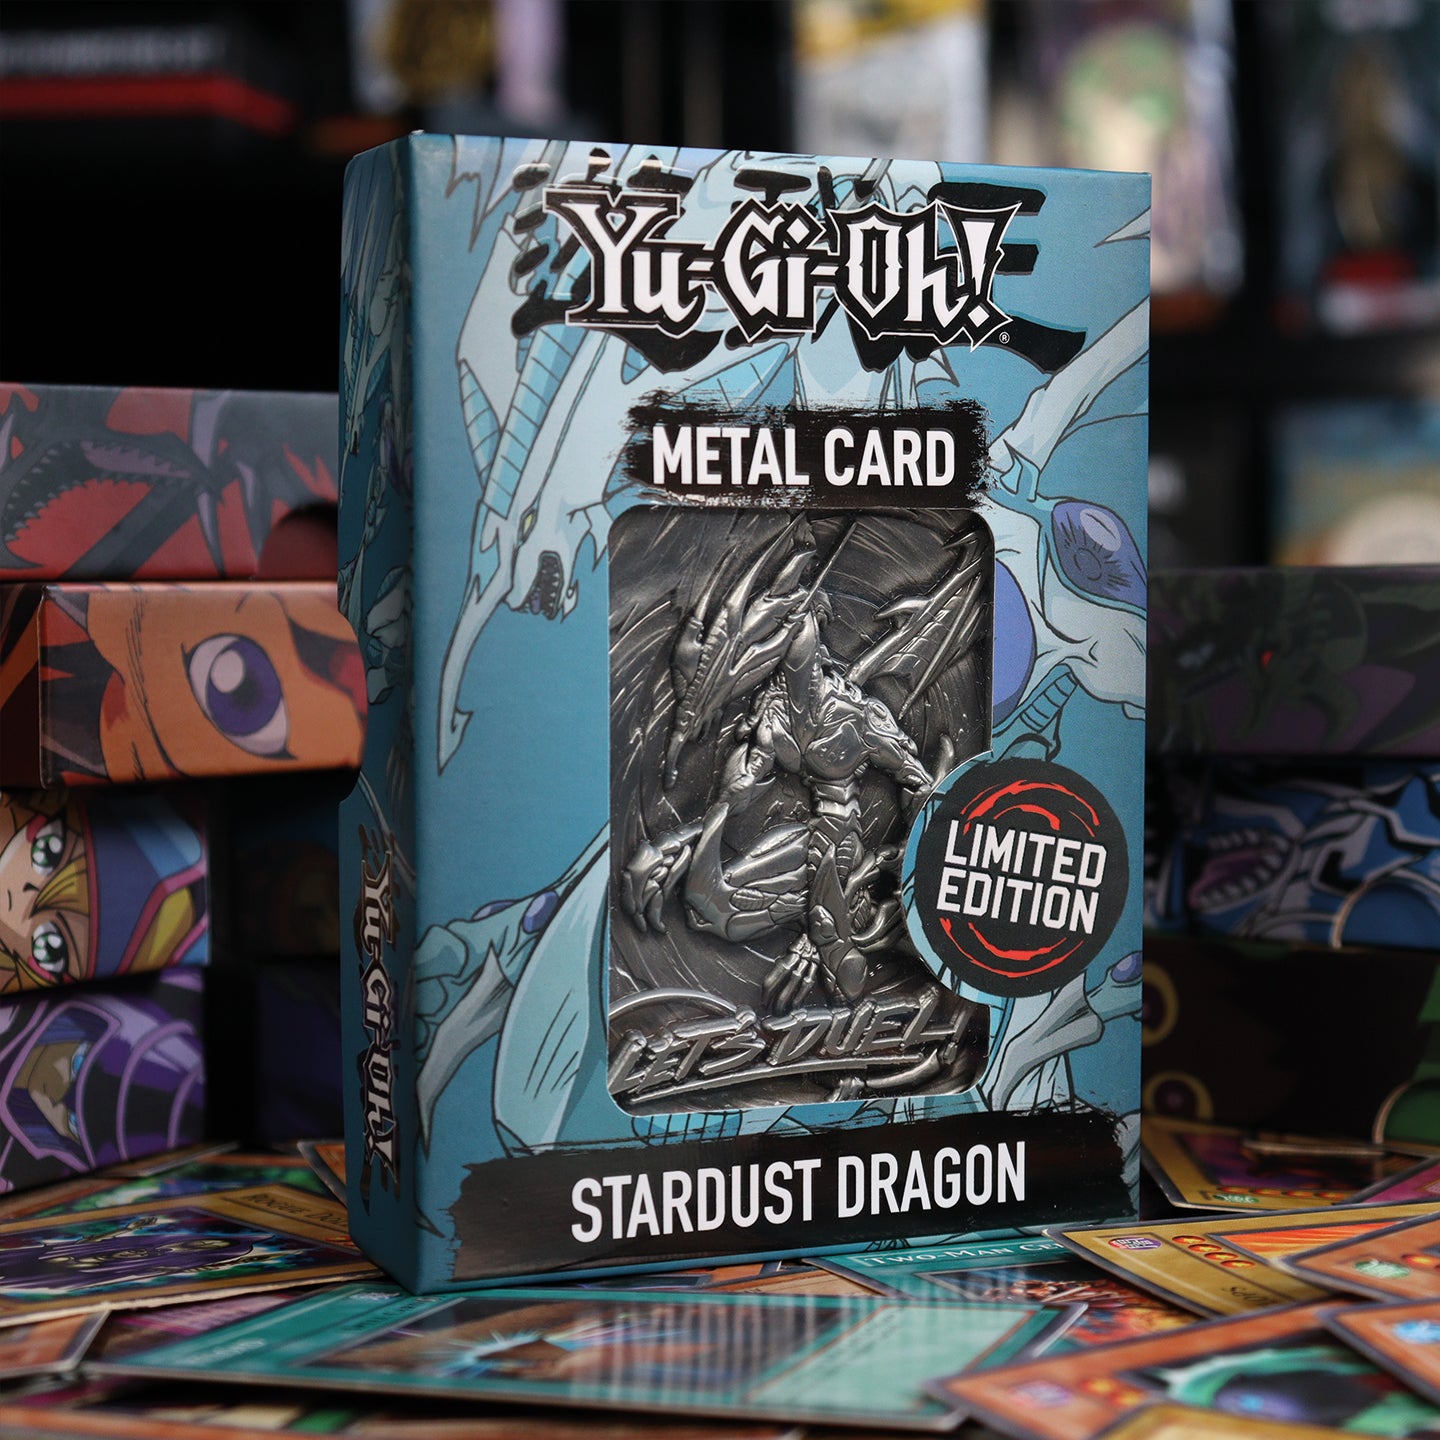 Yu-Gi-Oh! Limited Edition Stardust Dragon Metal Card